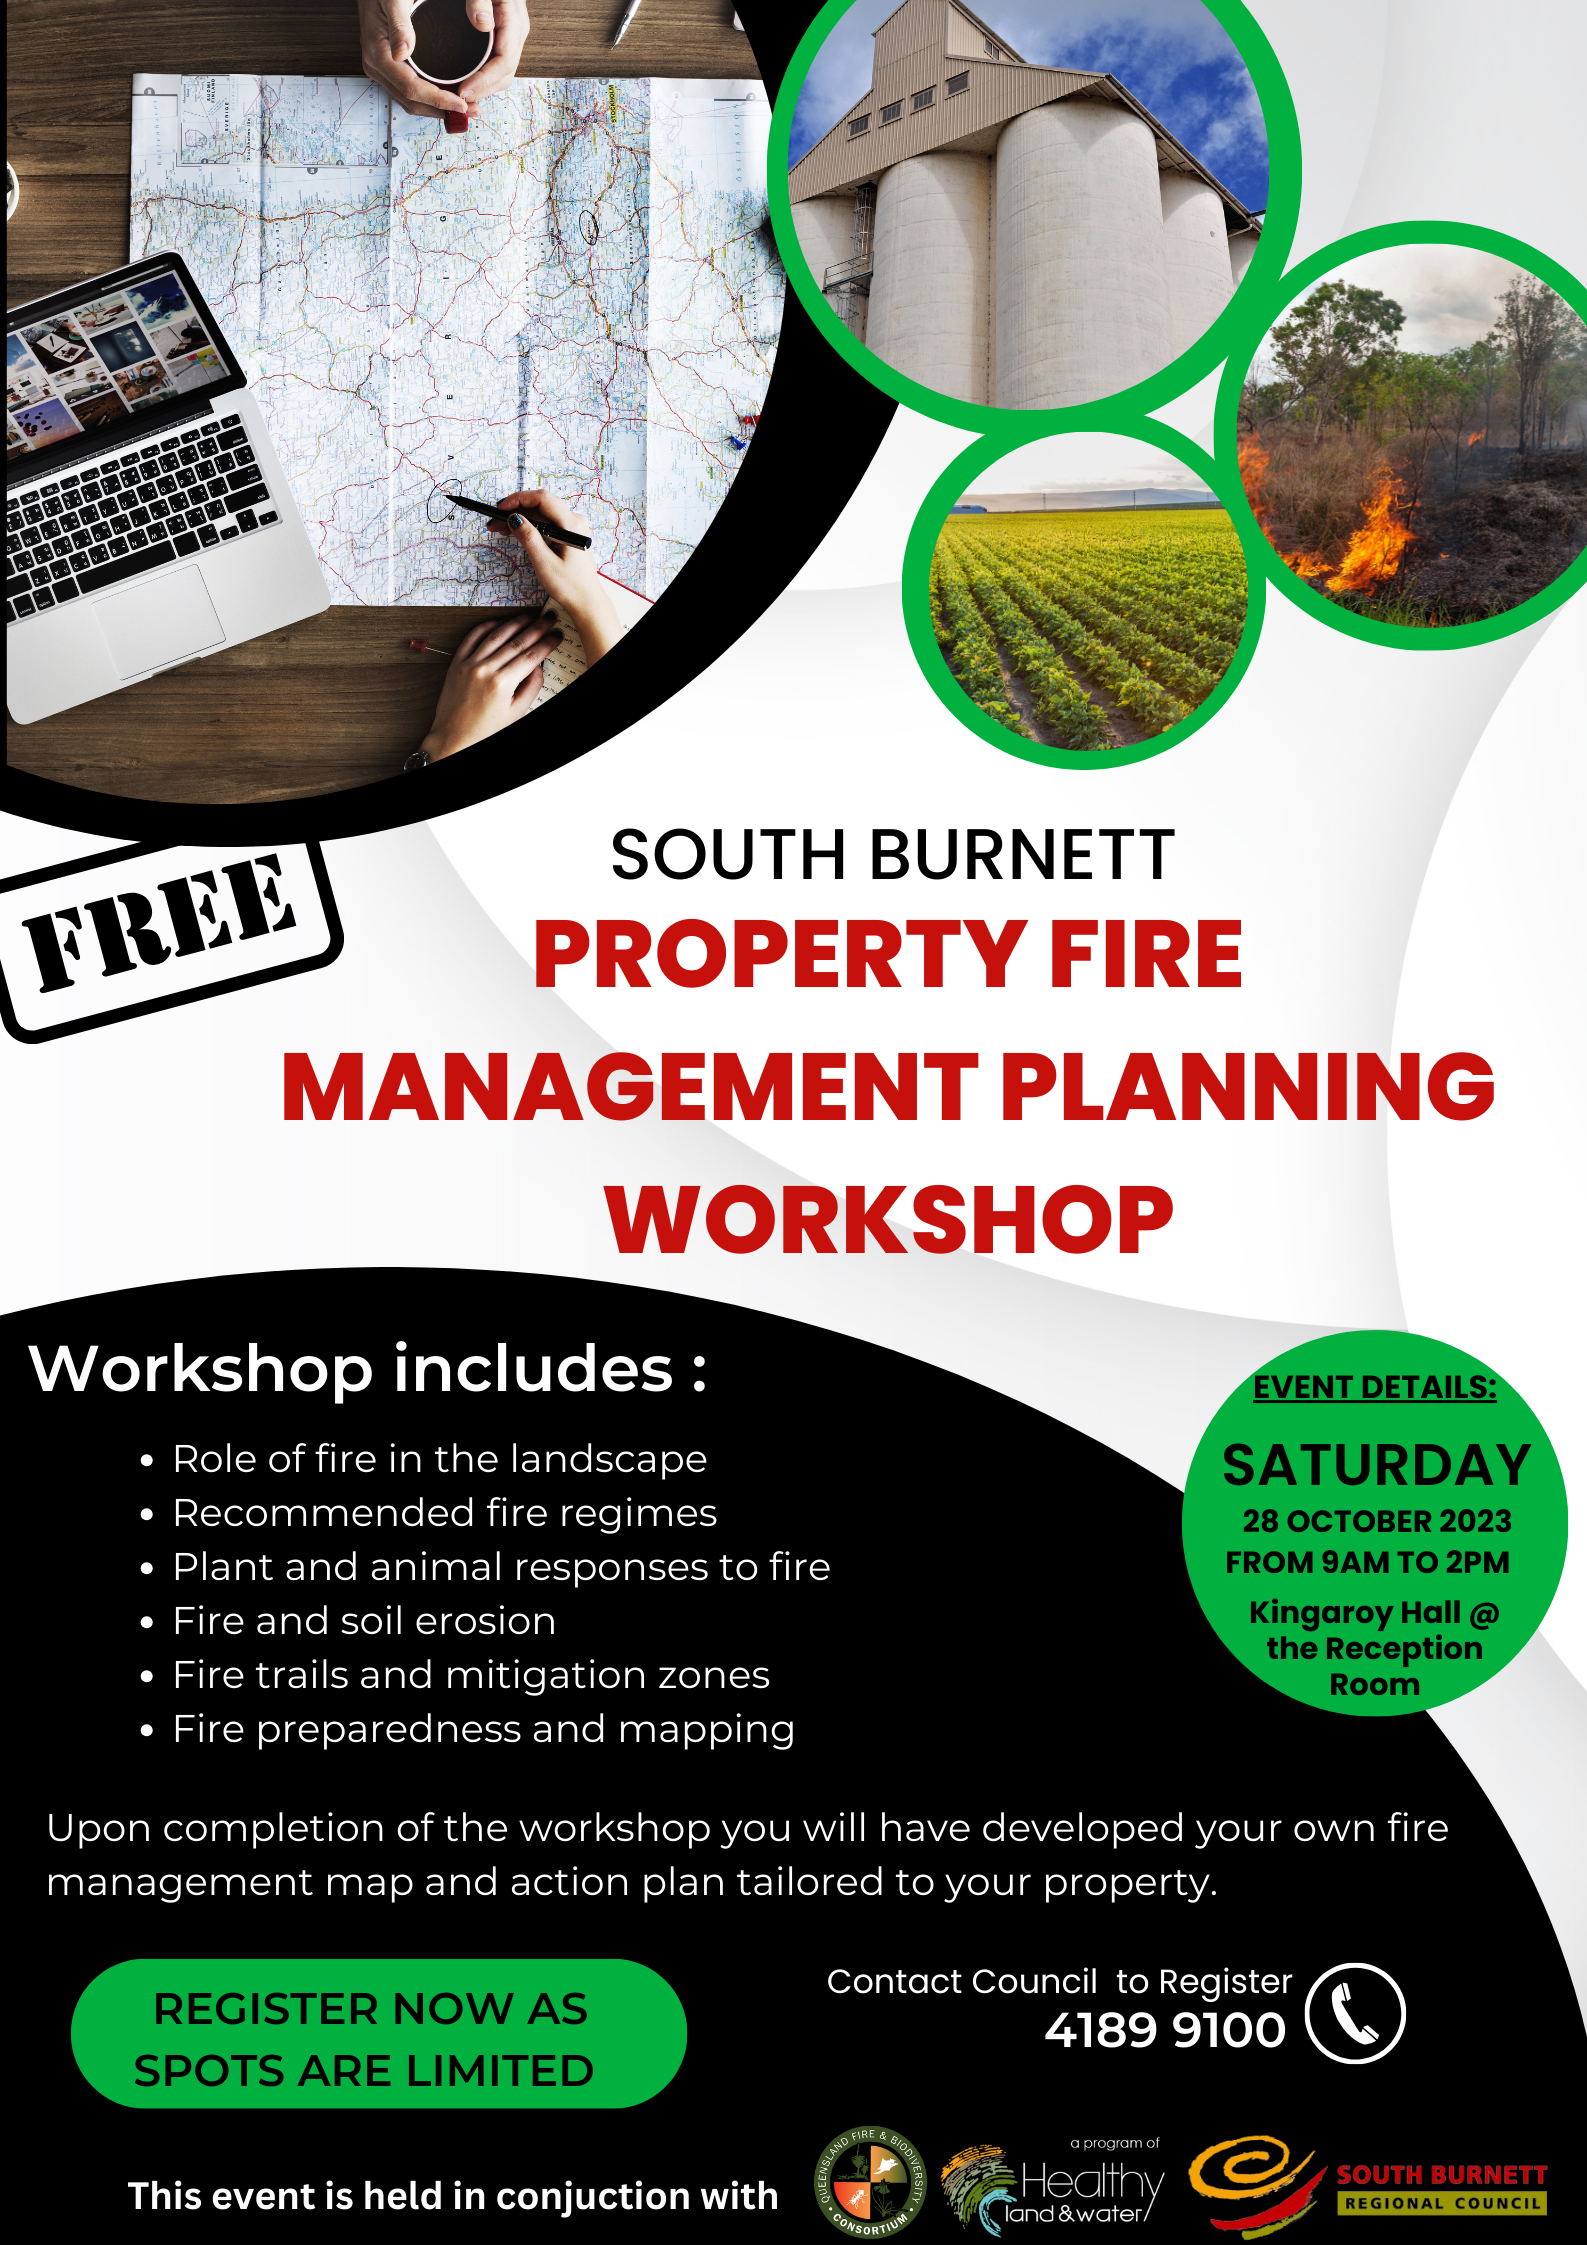 2 10 23 Property fire management planning workshop flyer